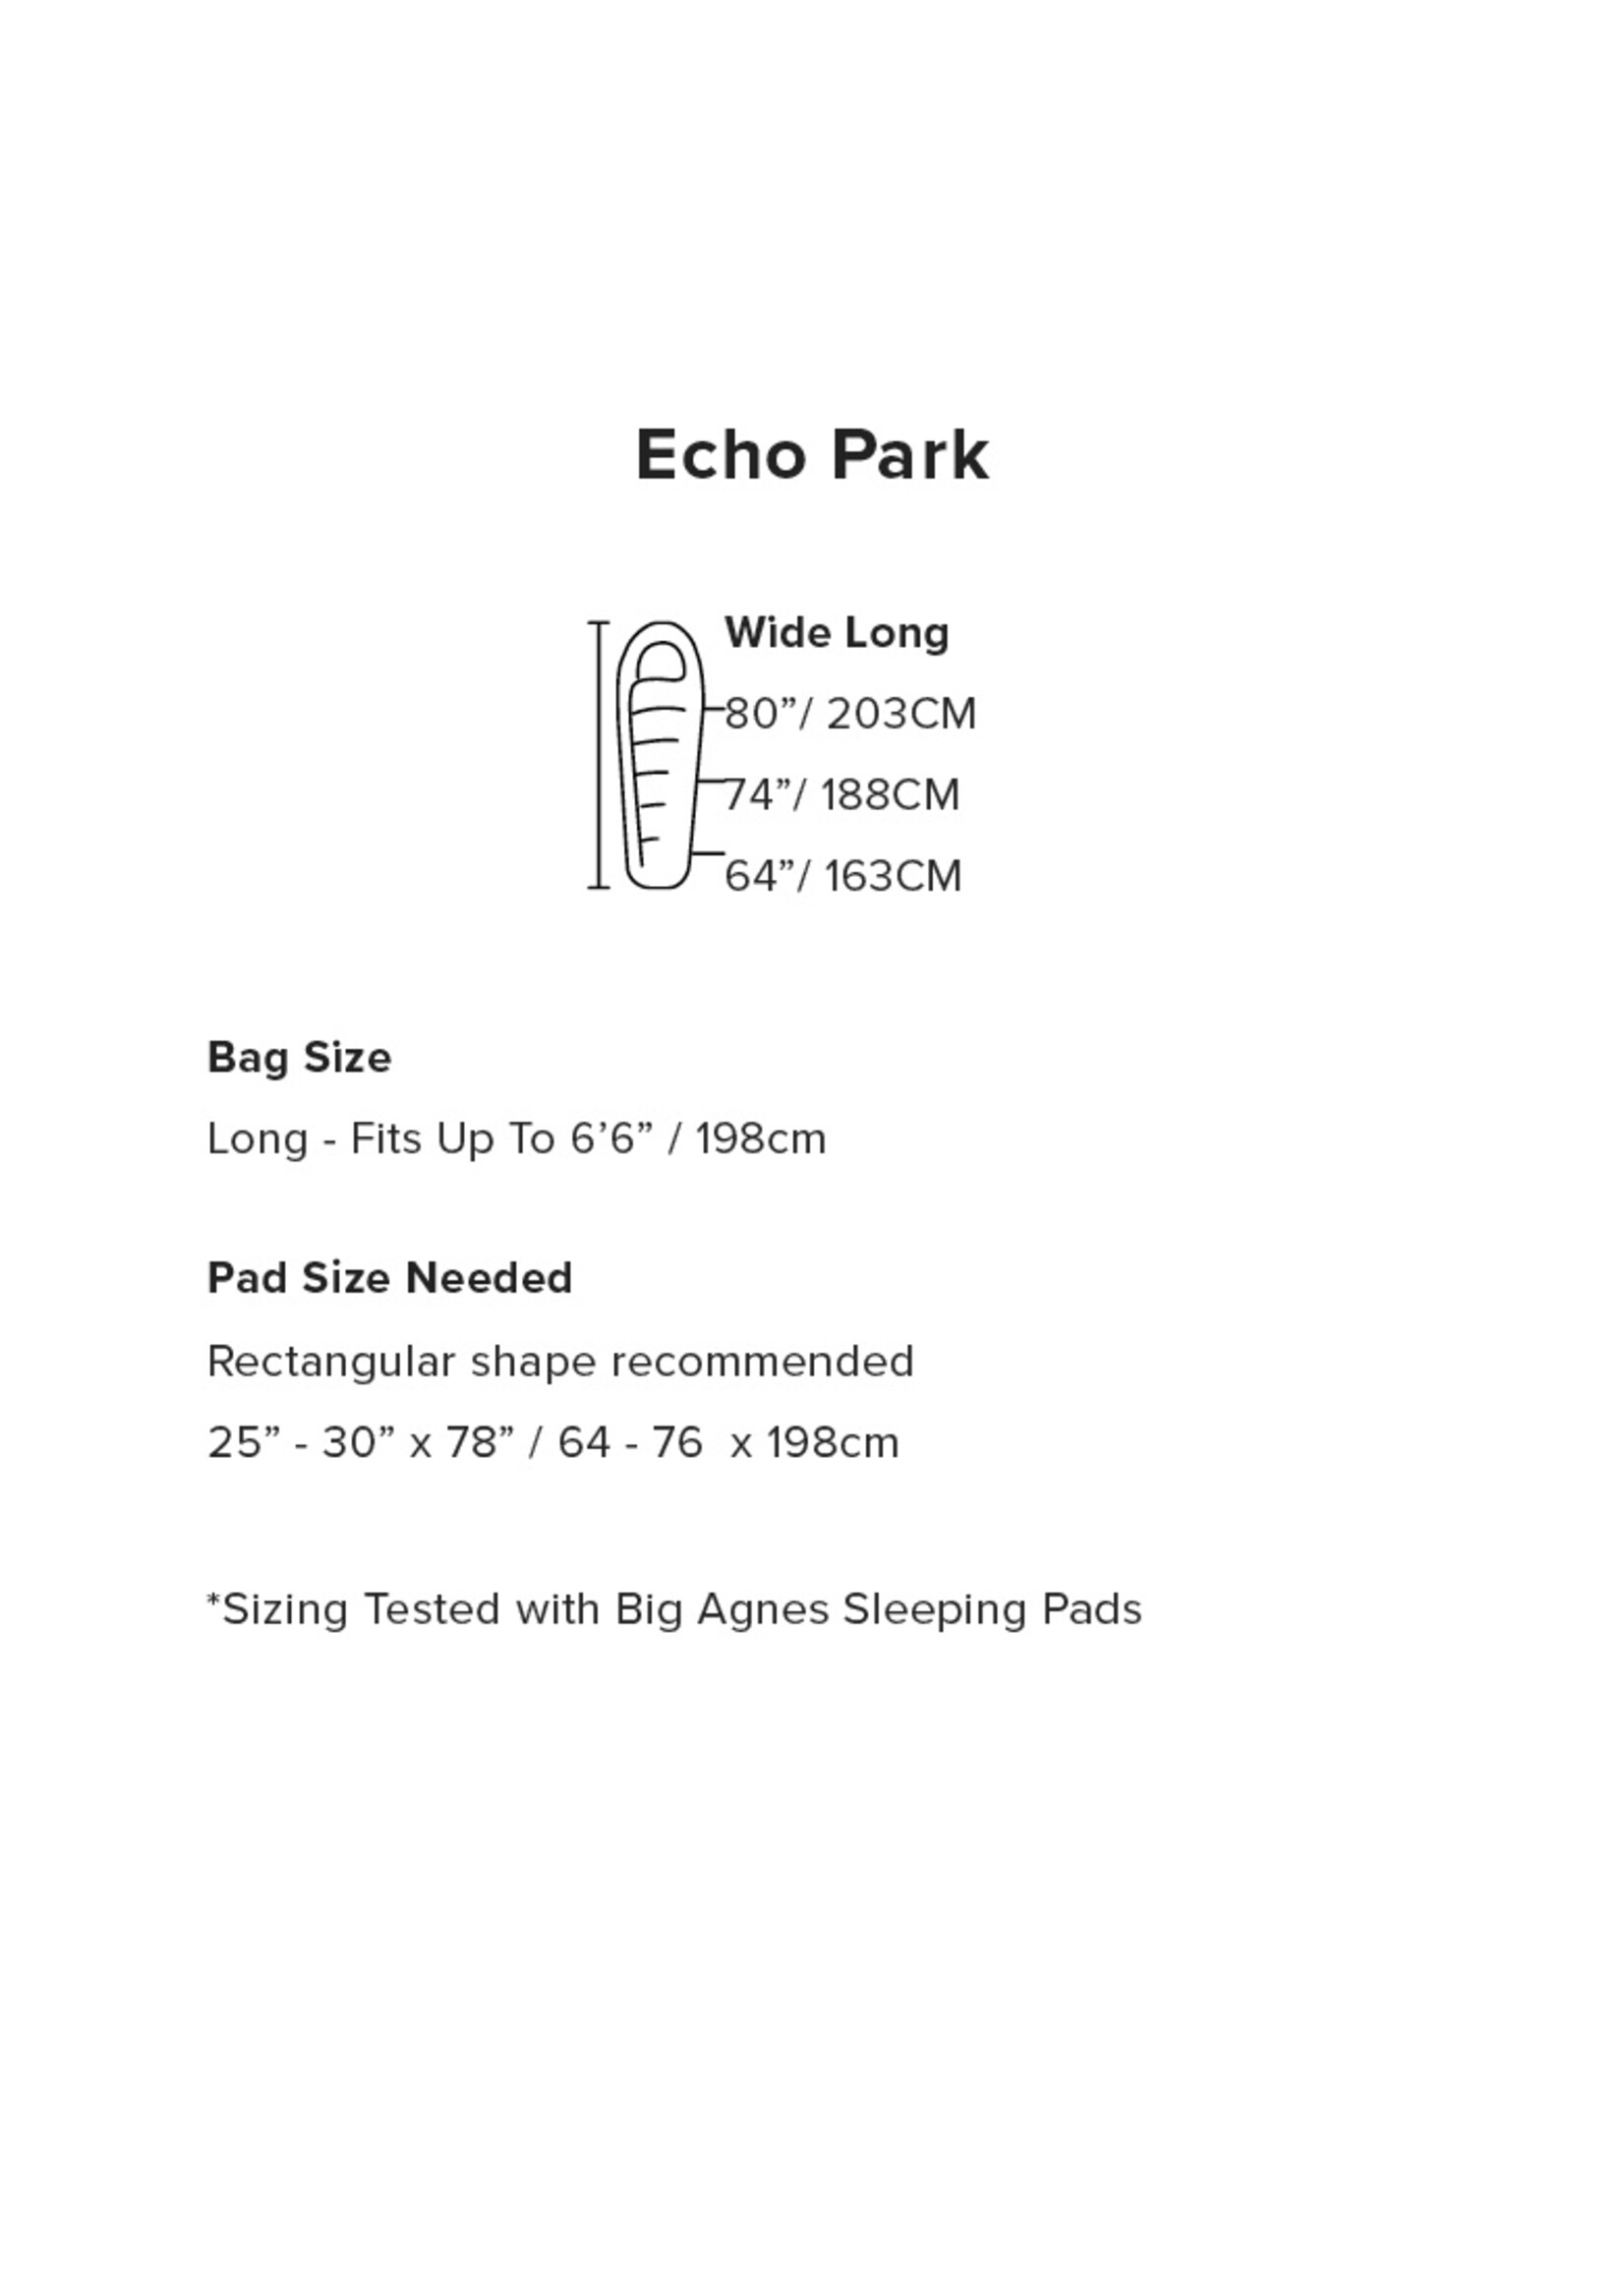 Big Agnes Echo Park 20 (FireLine Max) - Wide Long